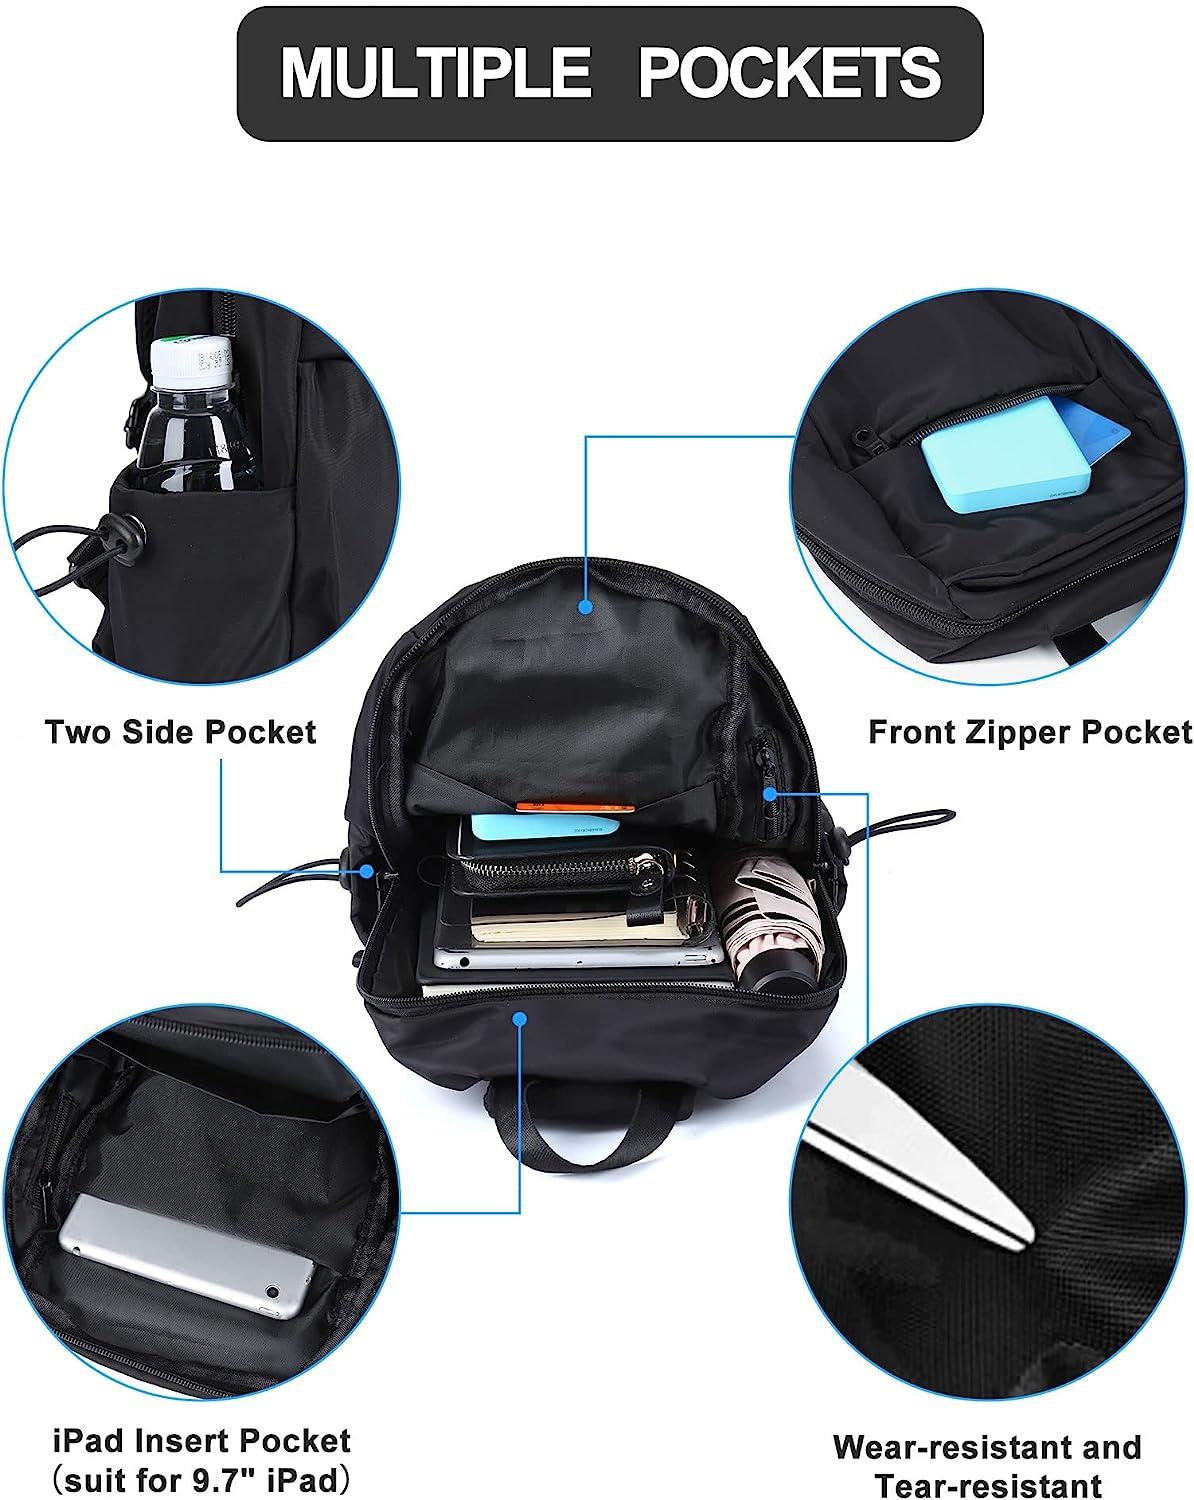 Small Sling Crossbody Backpack Shoulder Bag For Men Women, Lightweight One  Strap Backpack Sling Bag Backpack For Hiking Walking